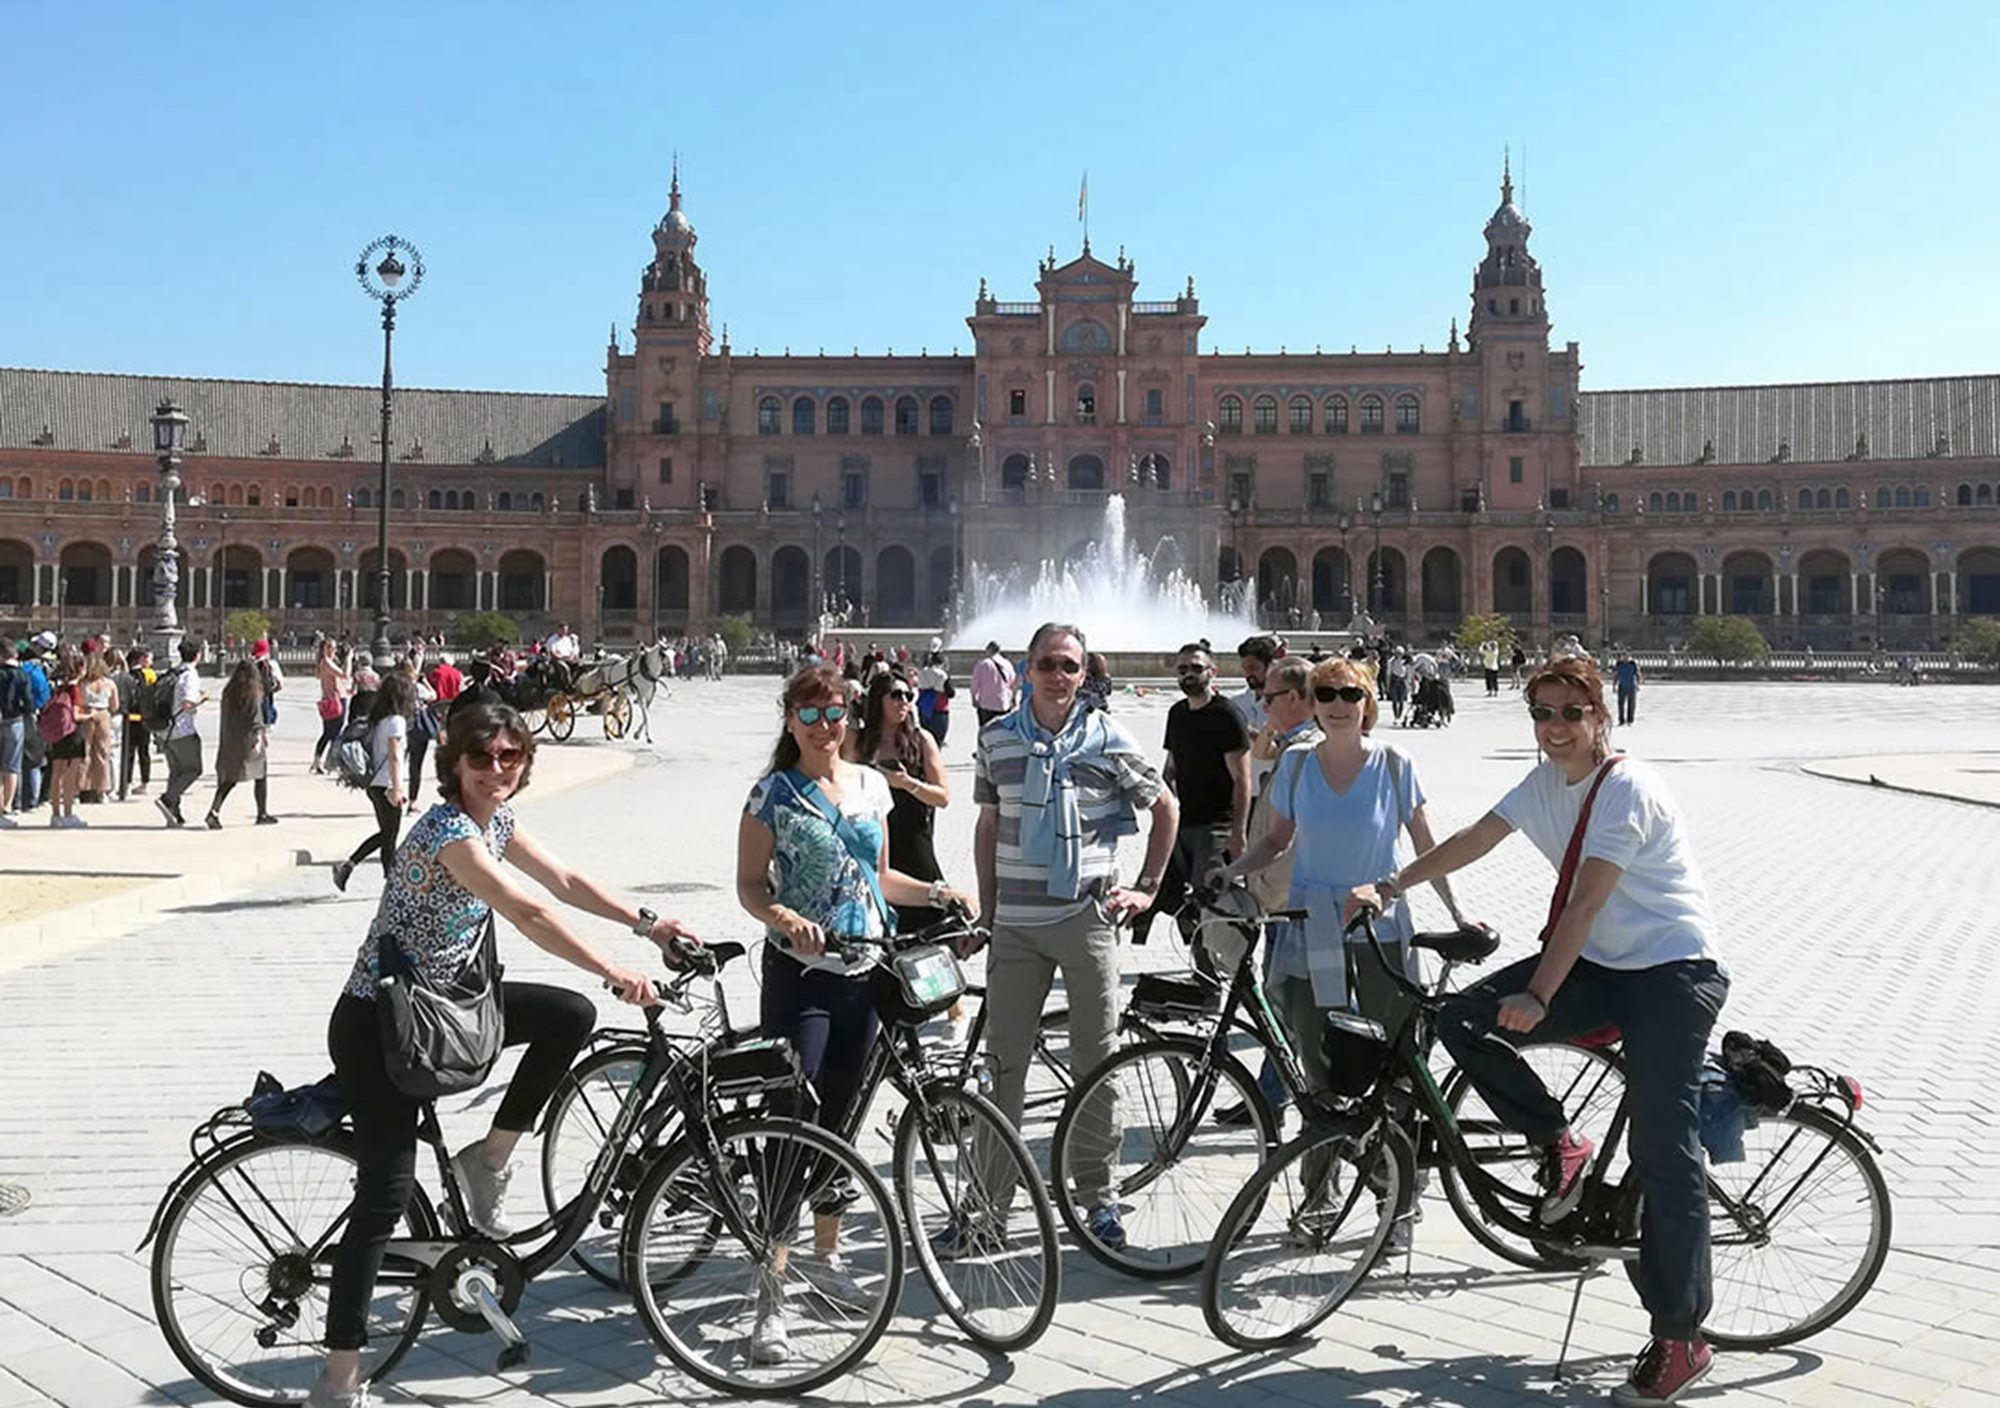 visitar Sevilla con guía experto en bicicleta, visitas guiadas en bicicleta por Sevilla, tours guiados en bicicleta por Sevilla, excursiones en bicicleta por Sevilla con guía oficial